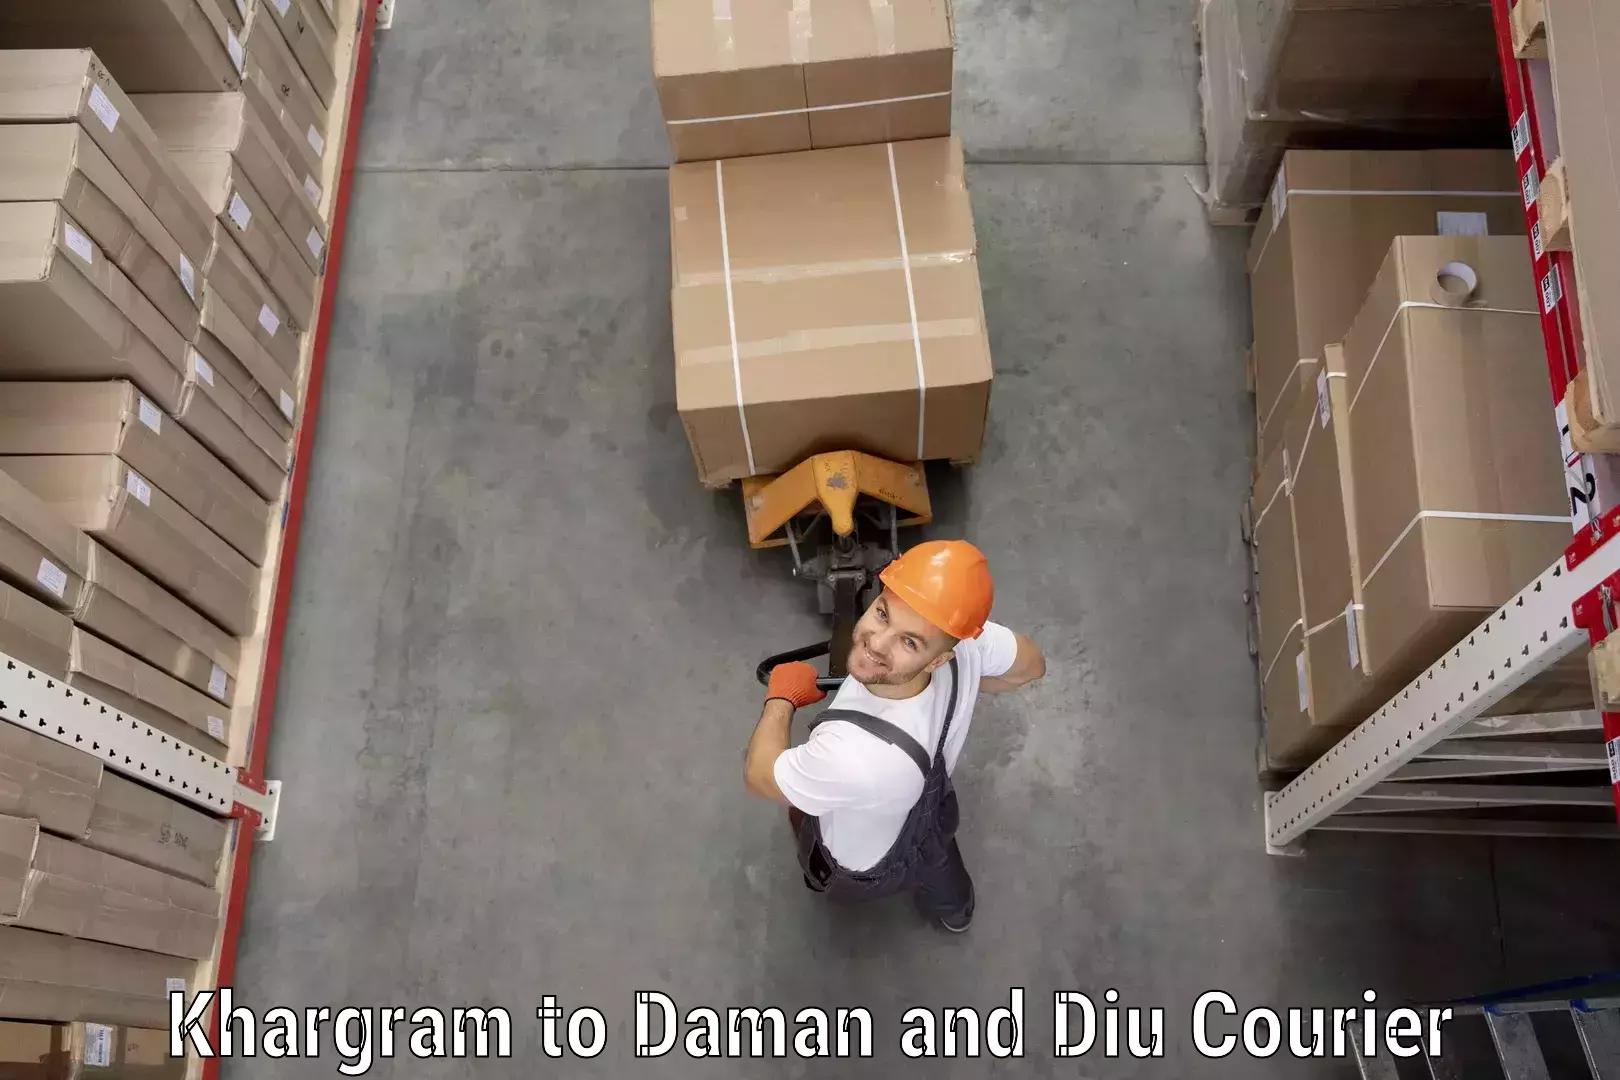 Reliable parcel services Khargram to Daman